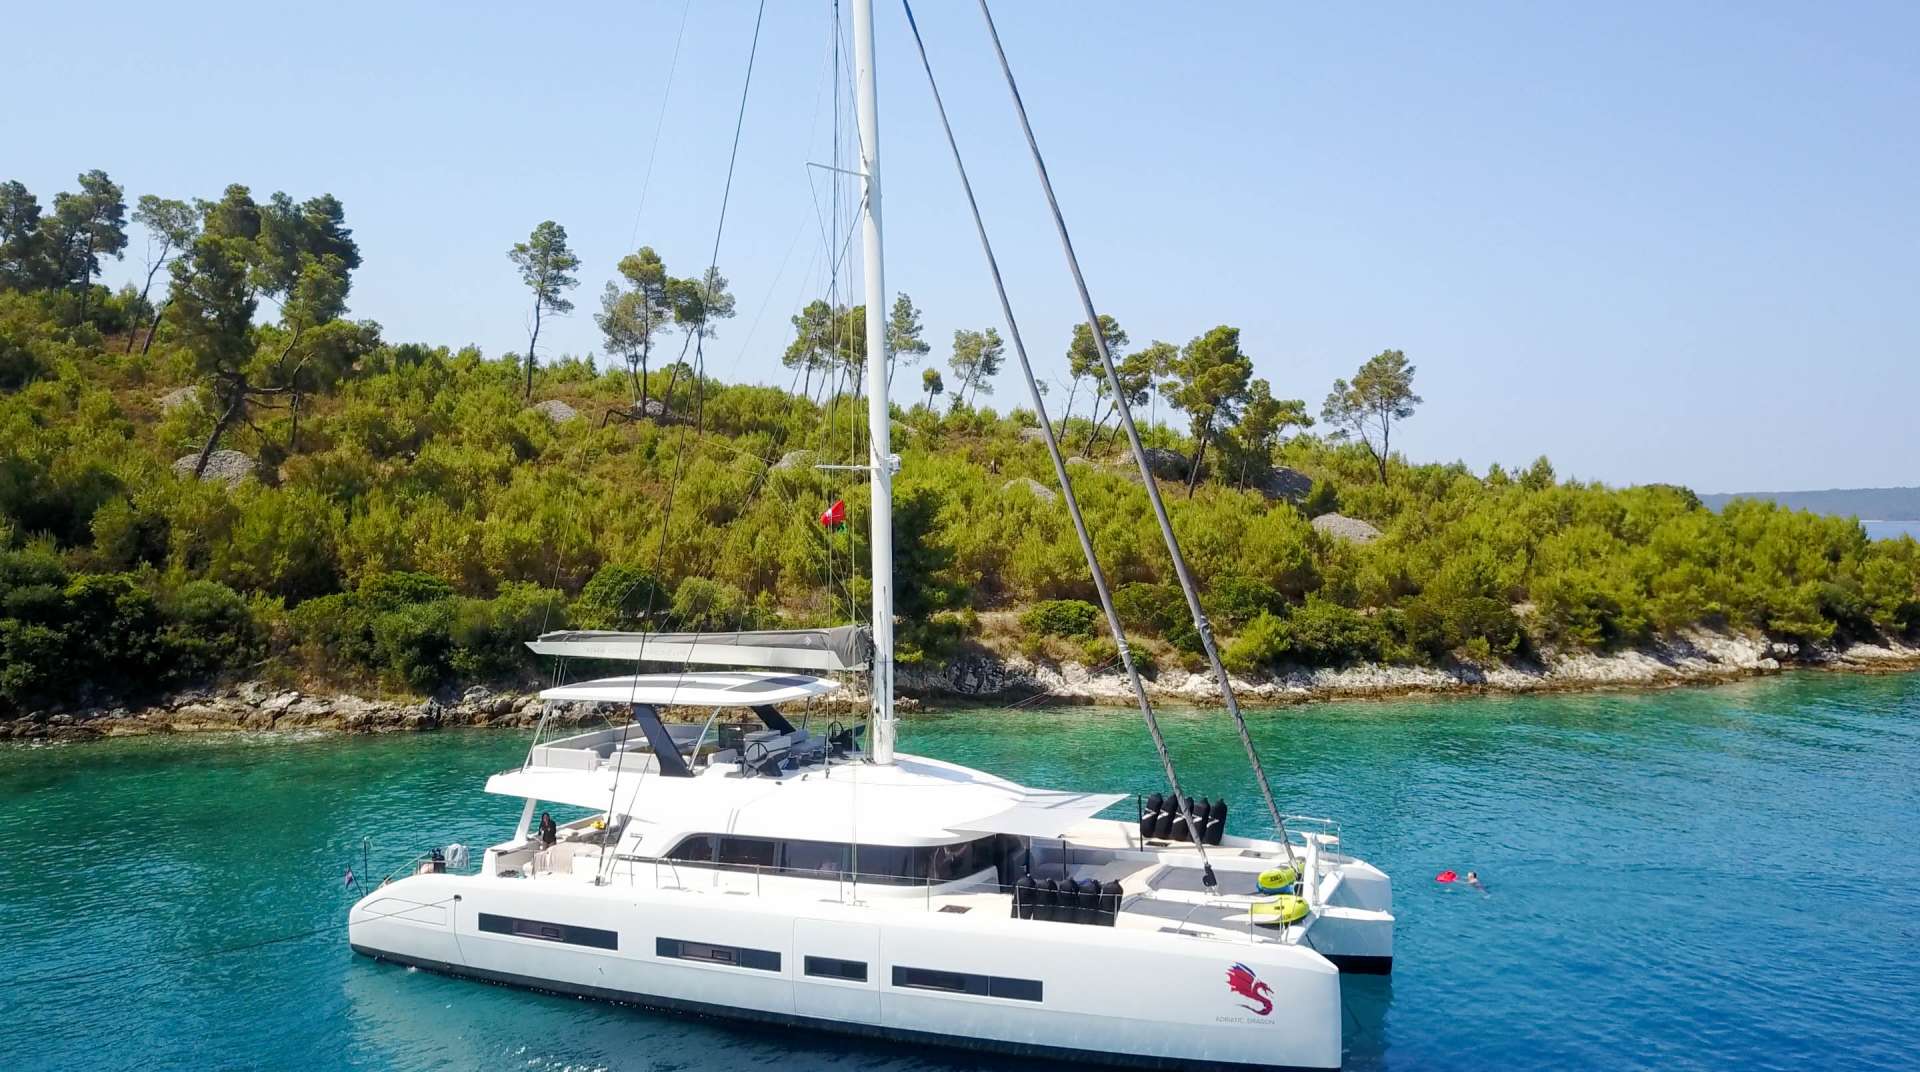 adriatic dragon (lagoon 77) - Yacht Charter Rijeka & Boat hire in Croatia 1